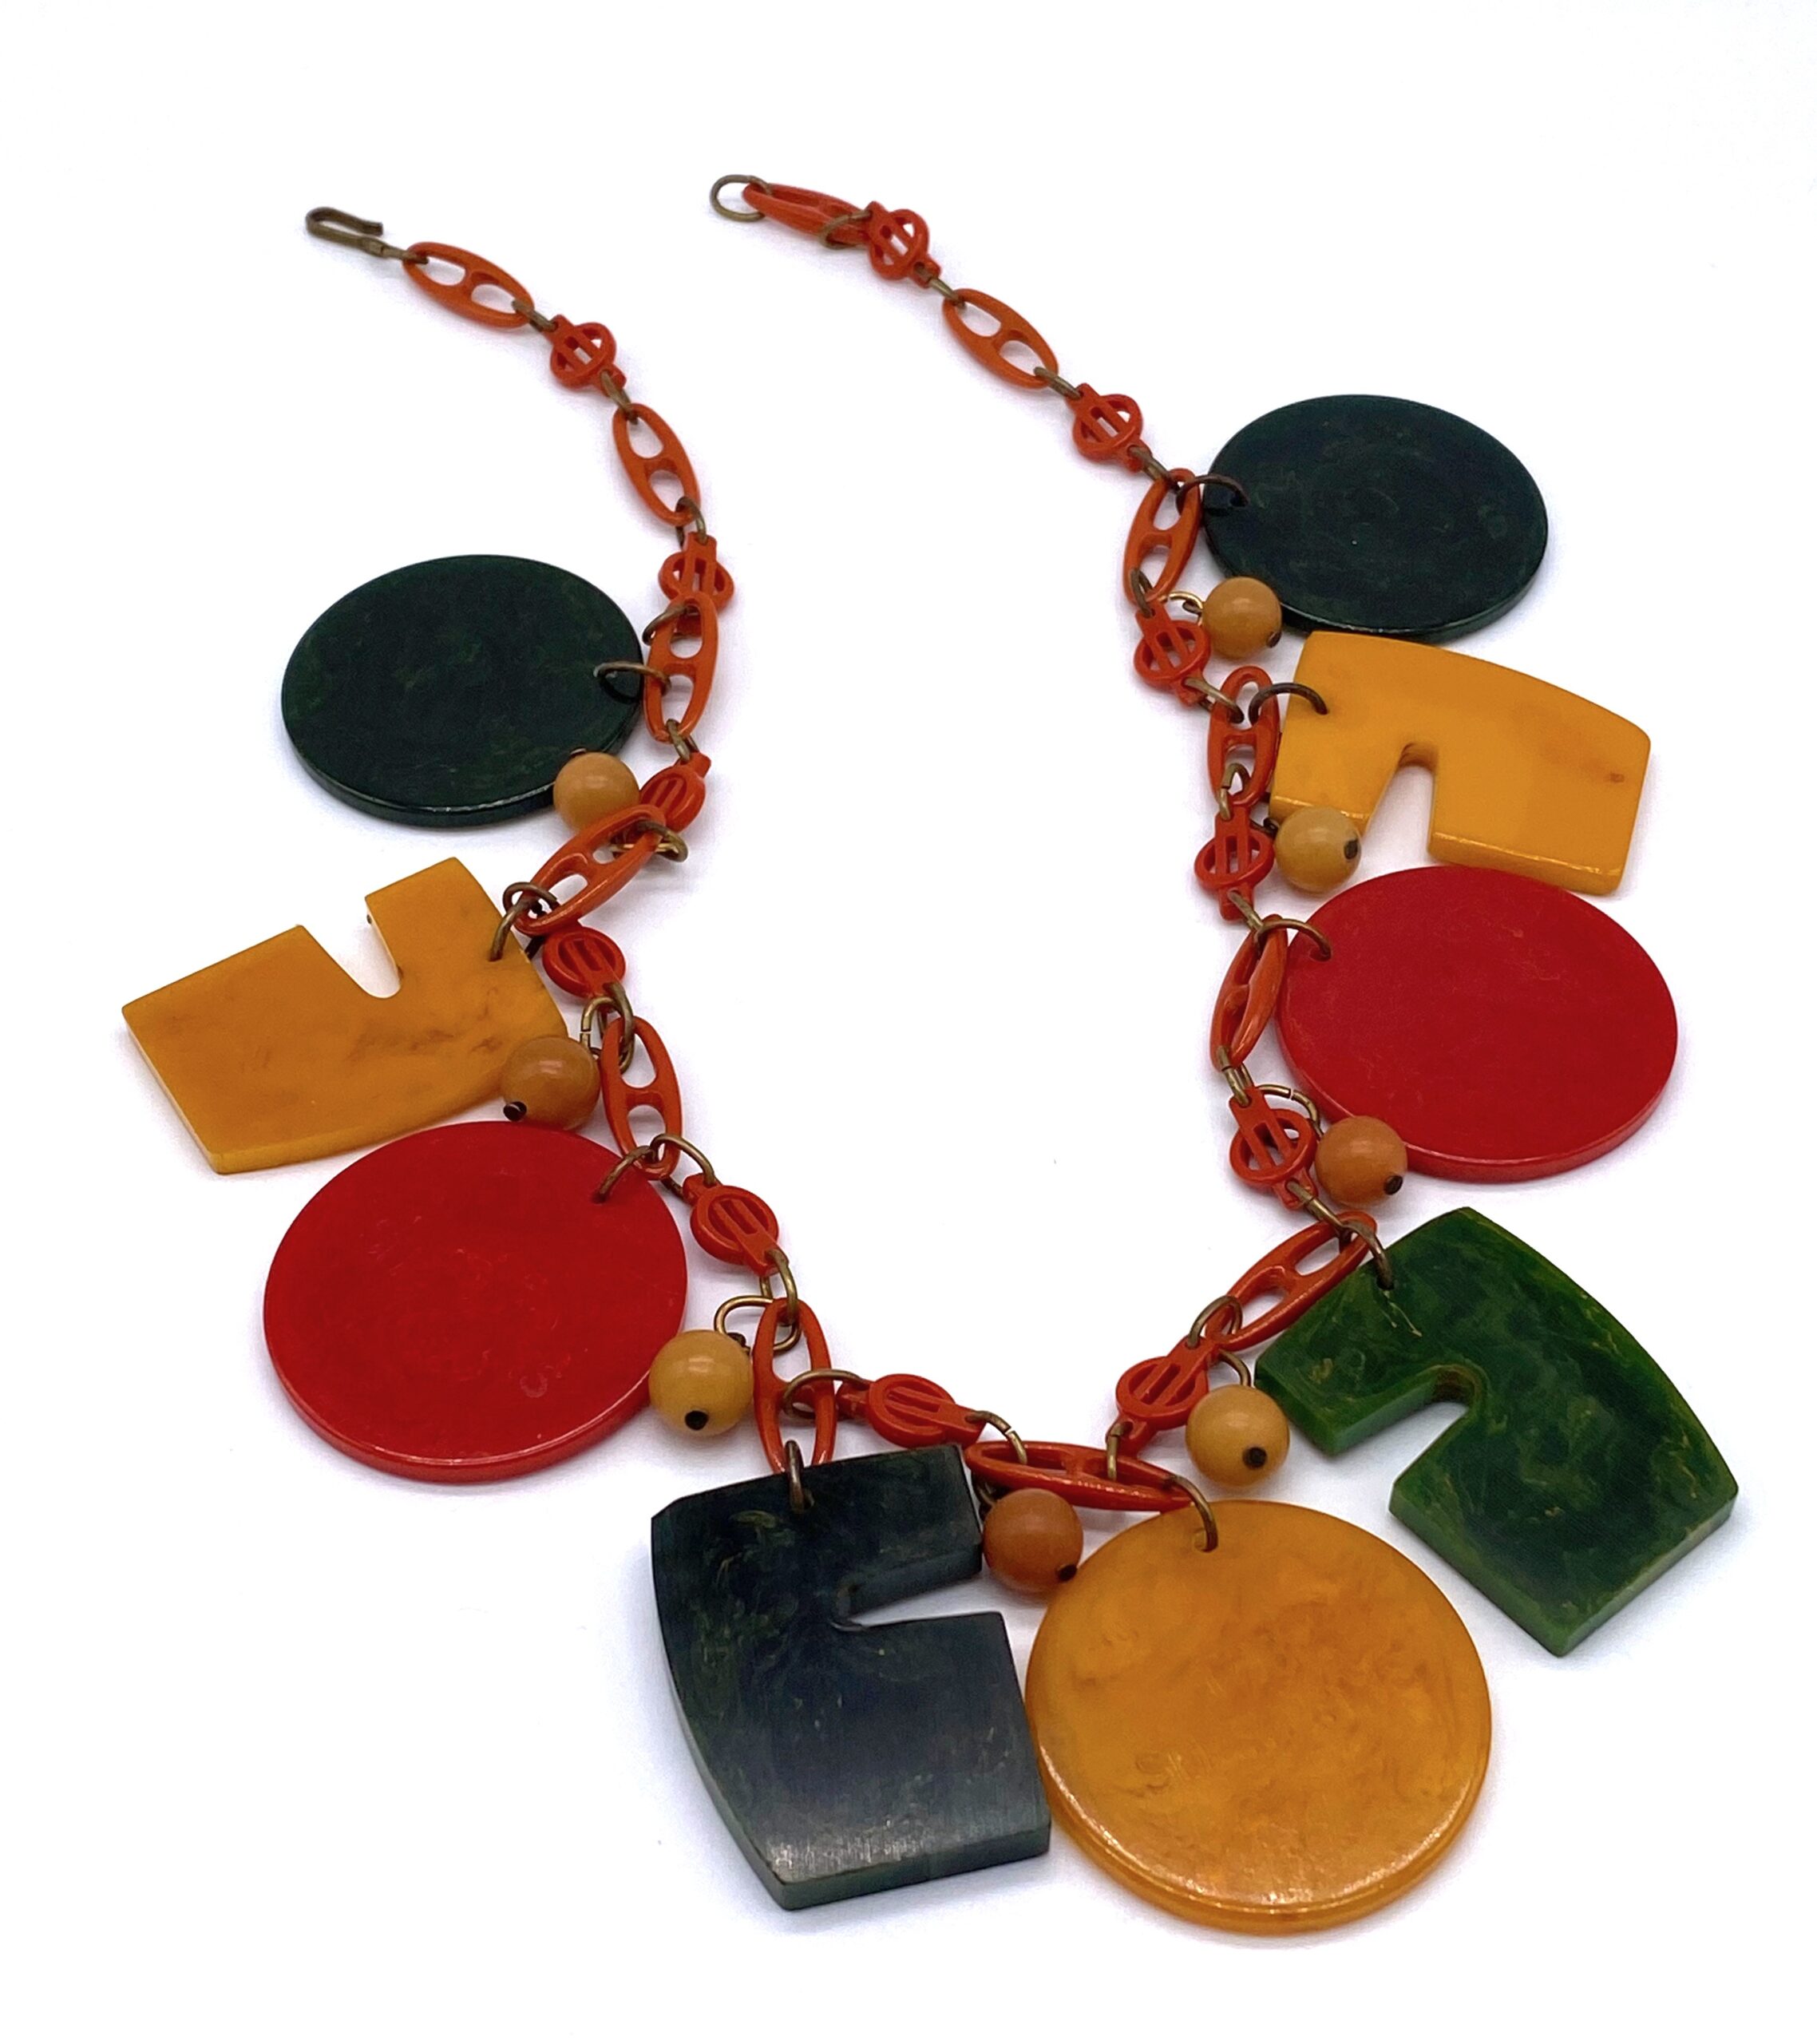 Vintage Cherry Red Bakelite Necklace 1930s Art Deco Jewelry